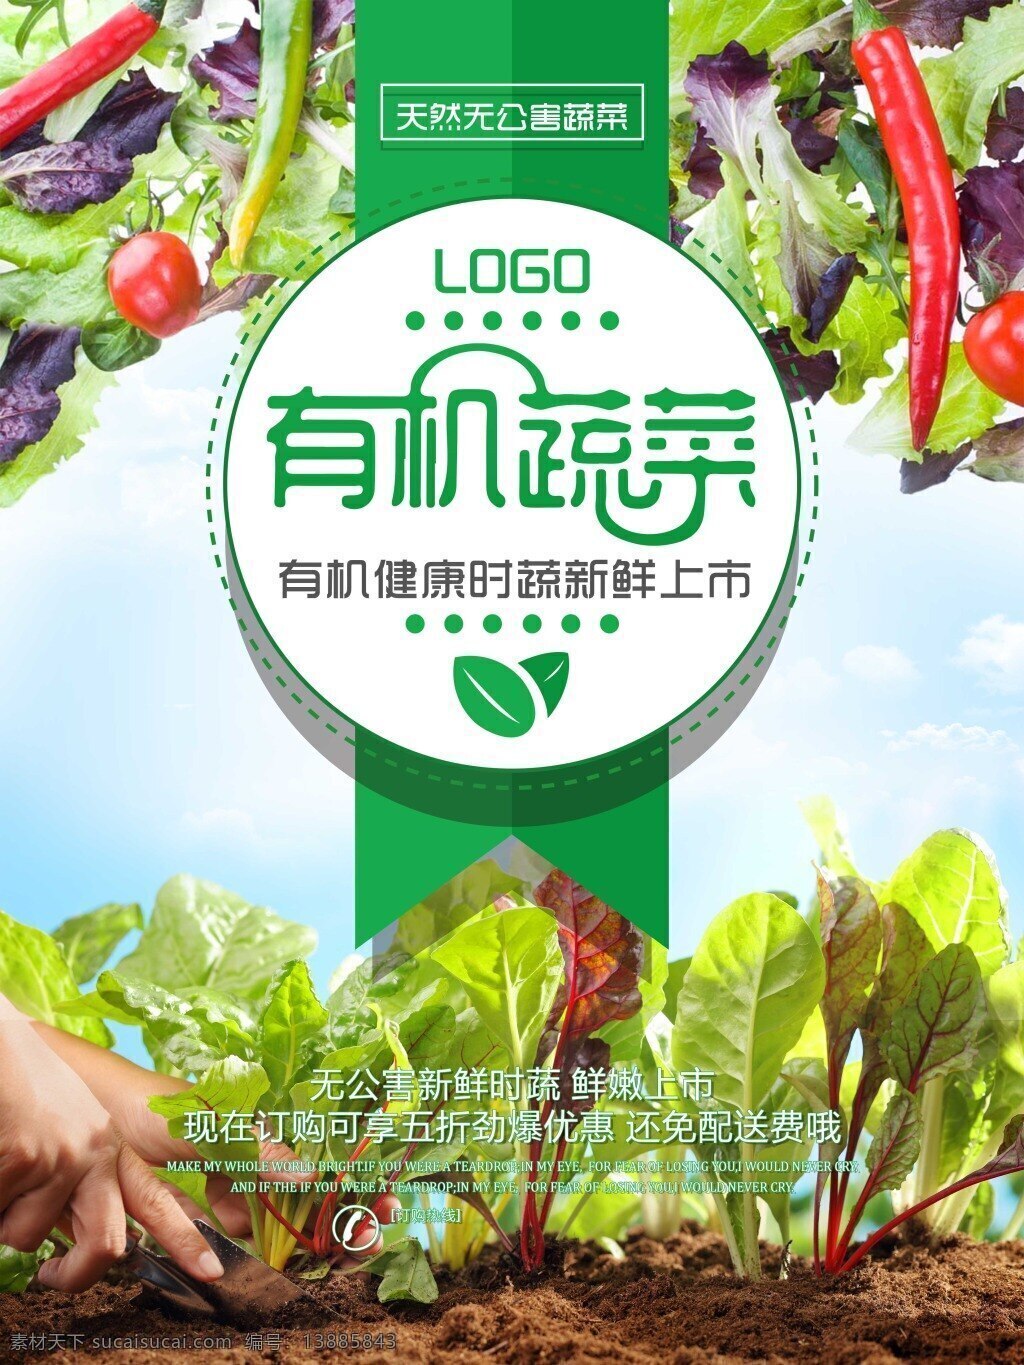 无公害 有机 蔬菜 新鲜 上市 海报 模版 绿色 有机蔬菜海报 有机蔬菜 超市 展板 健康 绿色蔬菜 新鲜蔬菜